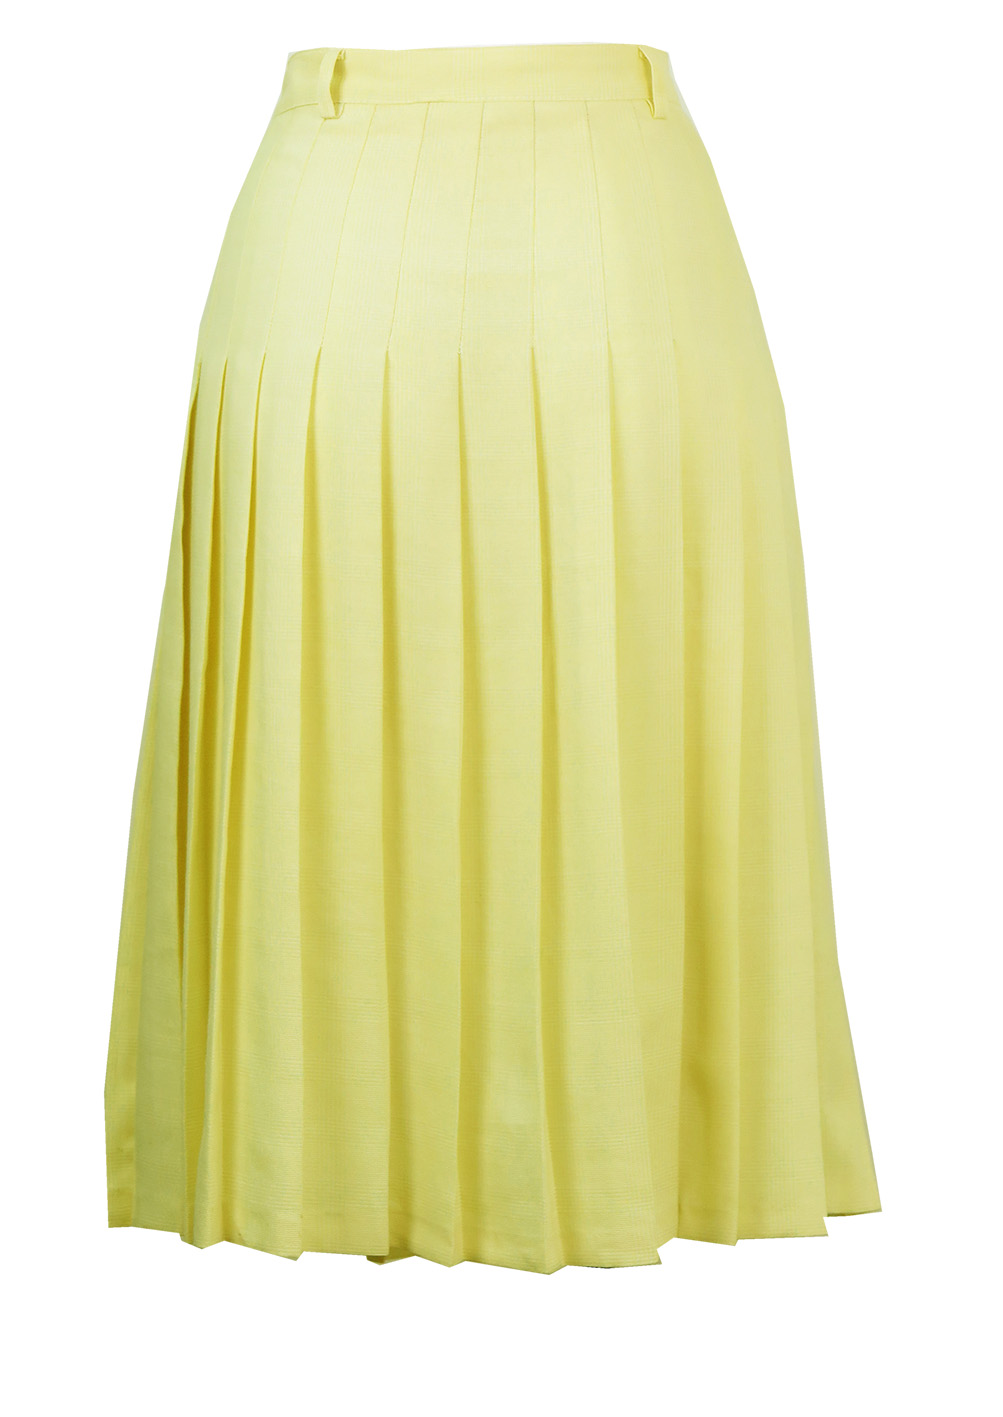 Midi Length Light Lemon Pleated Skirt with Fine White check - M | Reign ...